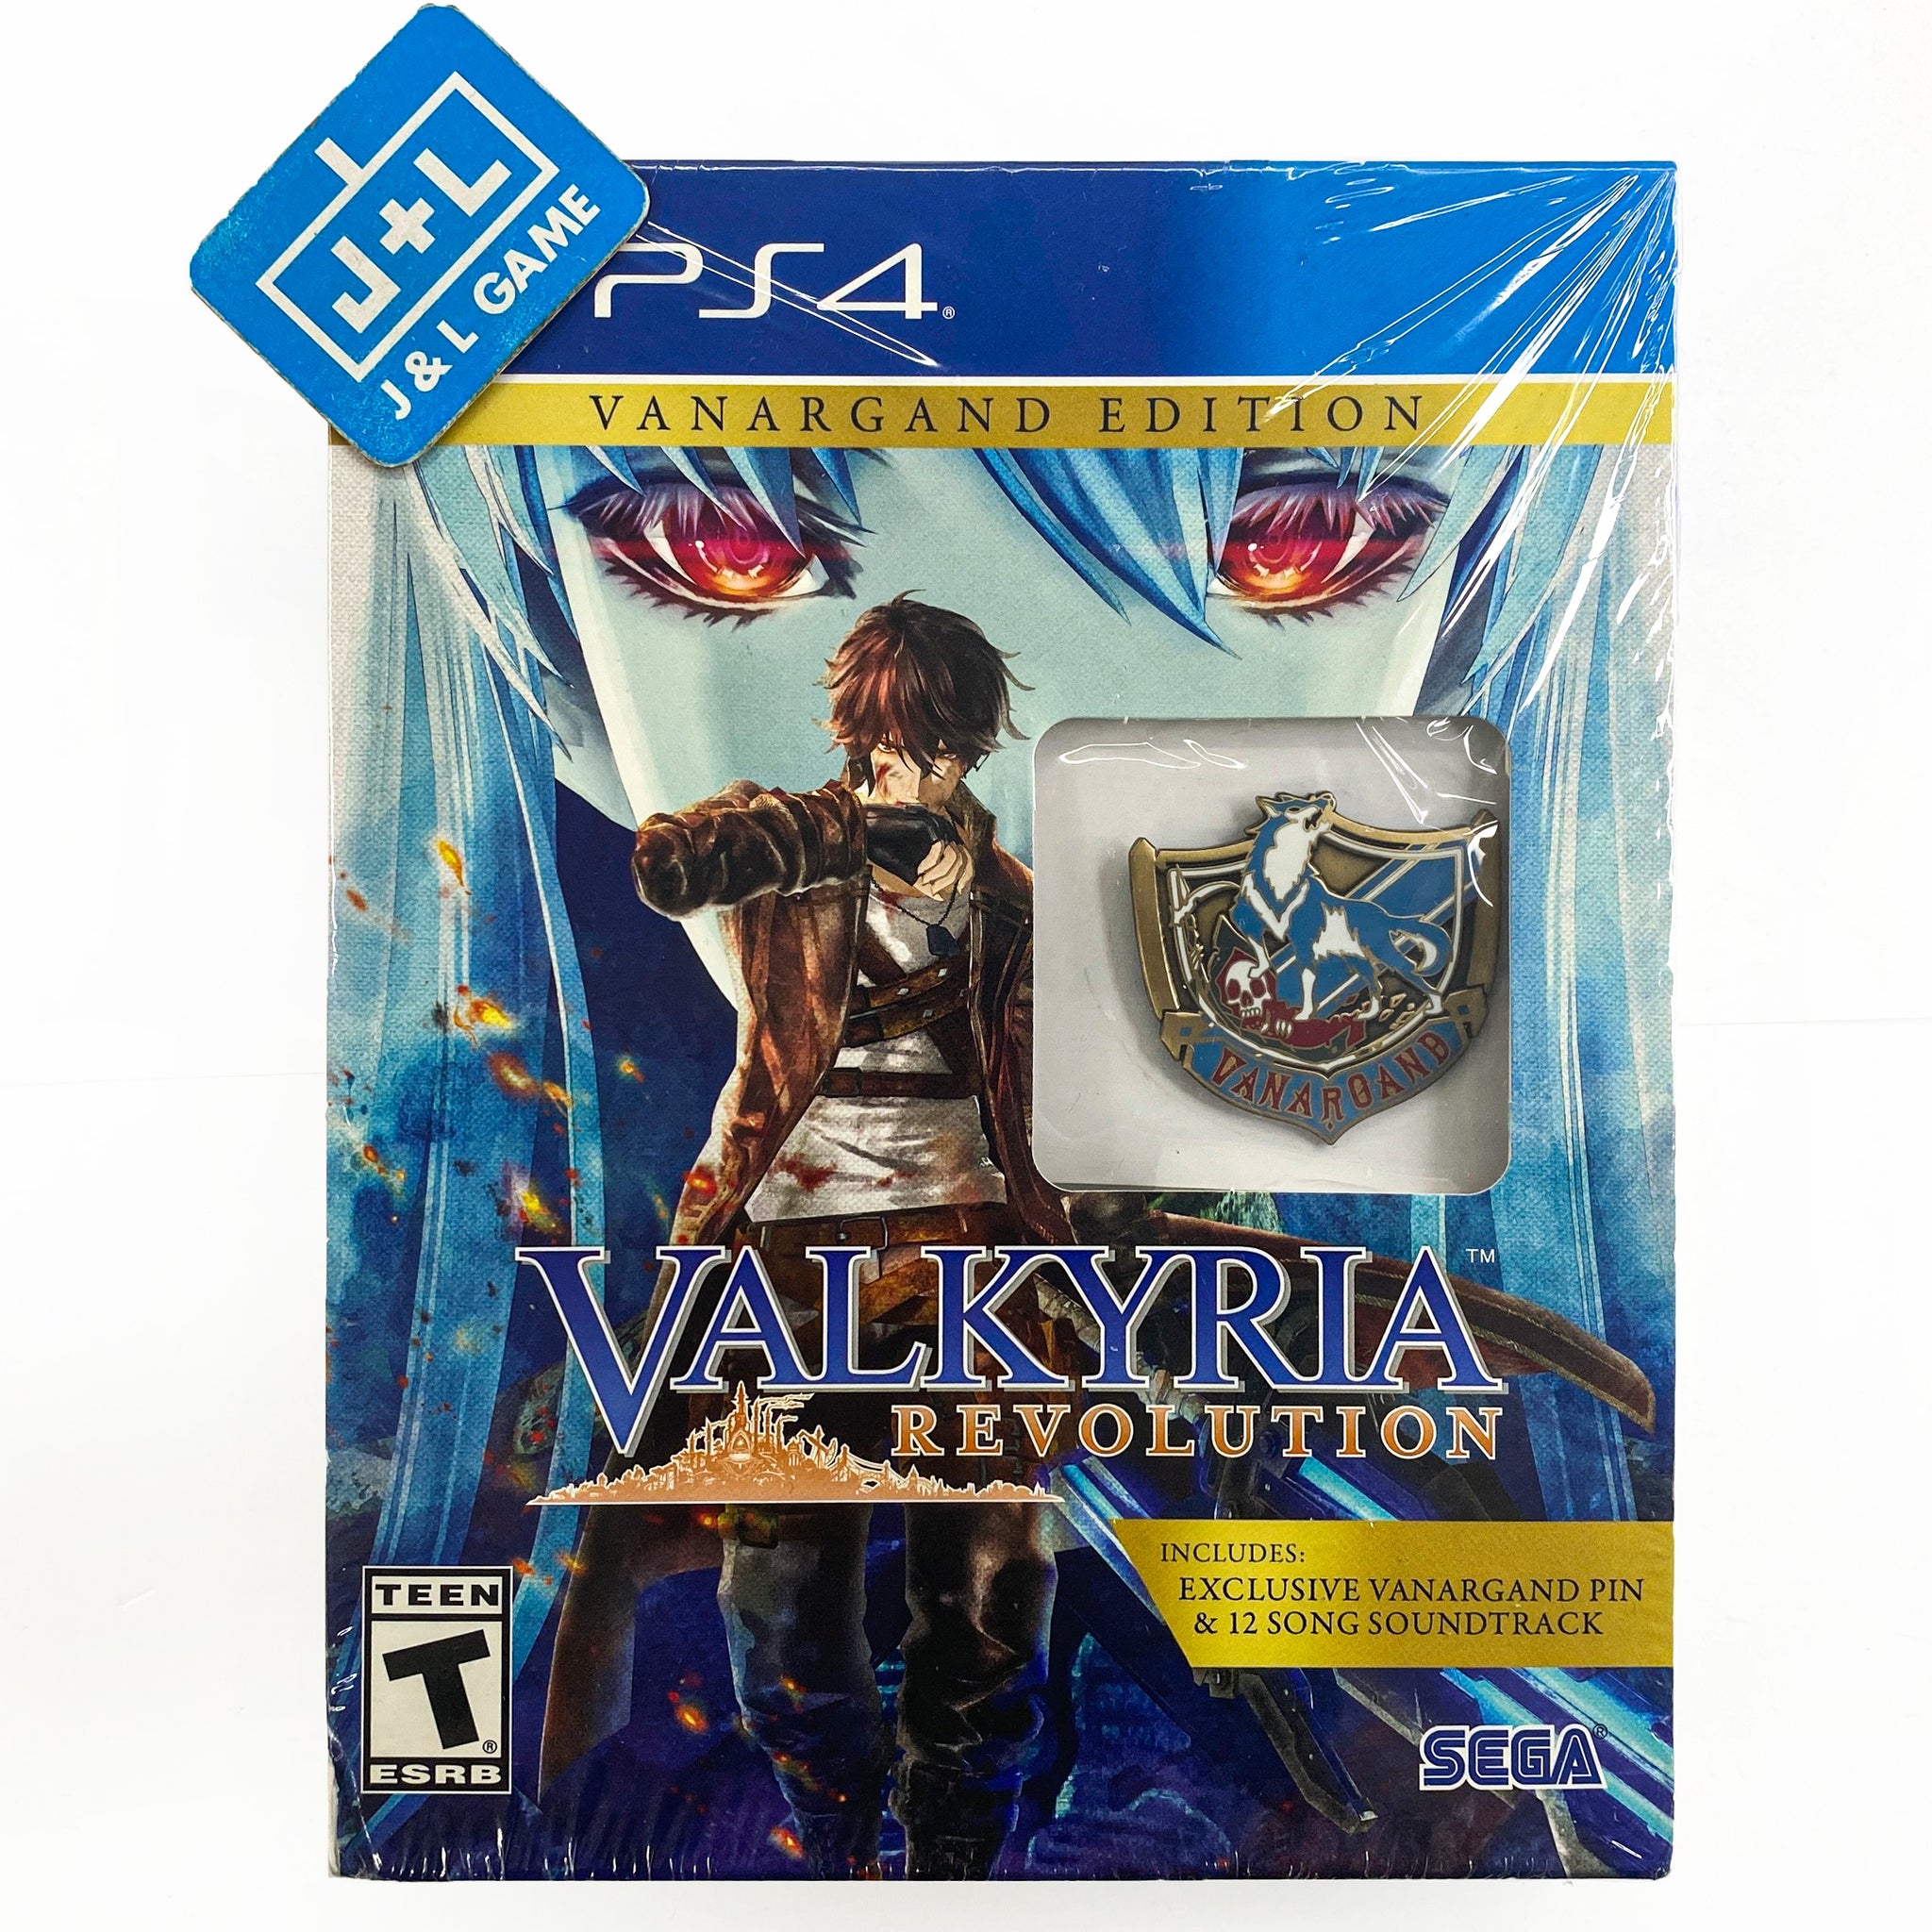 Kostume Multiplikation par Valkyria Revolution (Vanargand Edition) - (PS4) PlayStation 4 – J&L Video  Games New York City